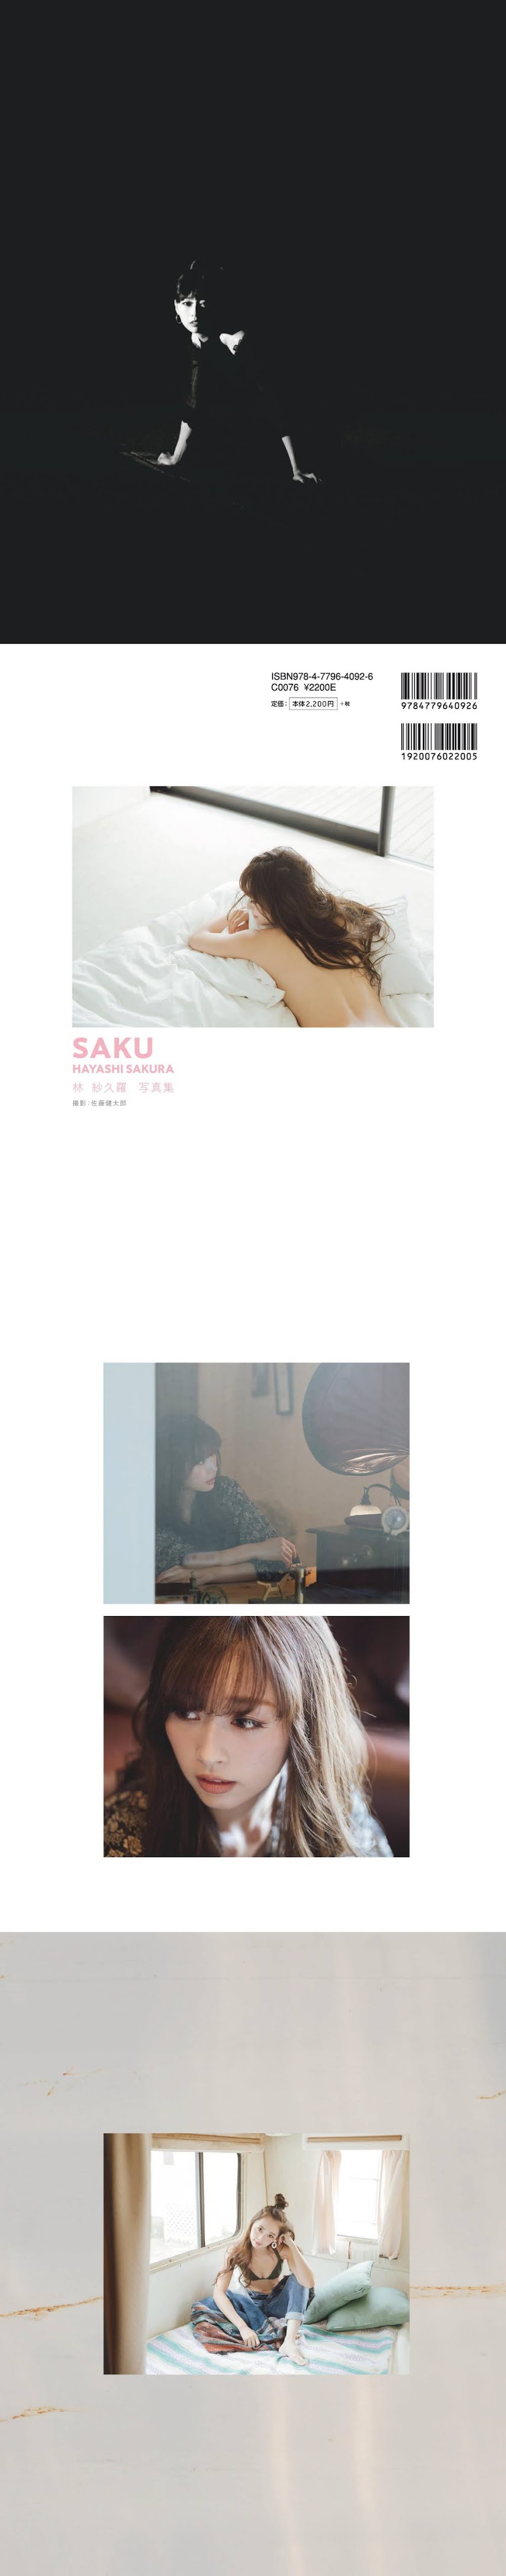 [Digital Photobook] Sakura Hayashi 林紗久羅 - SAKU (2019-12-26)   P214542Real Street Angels